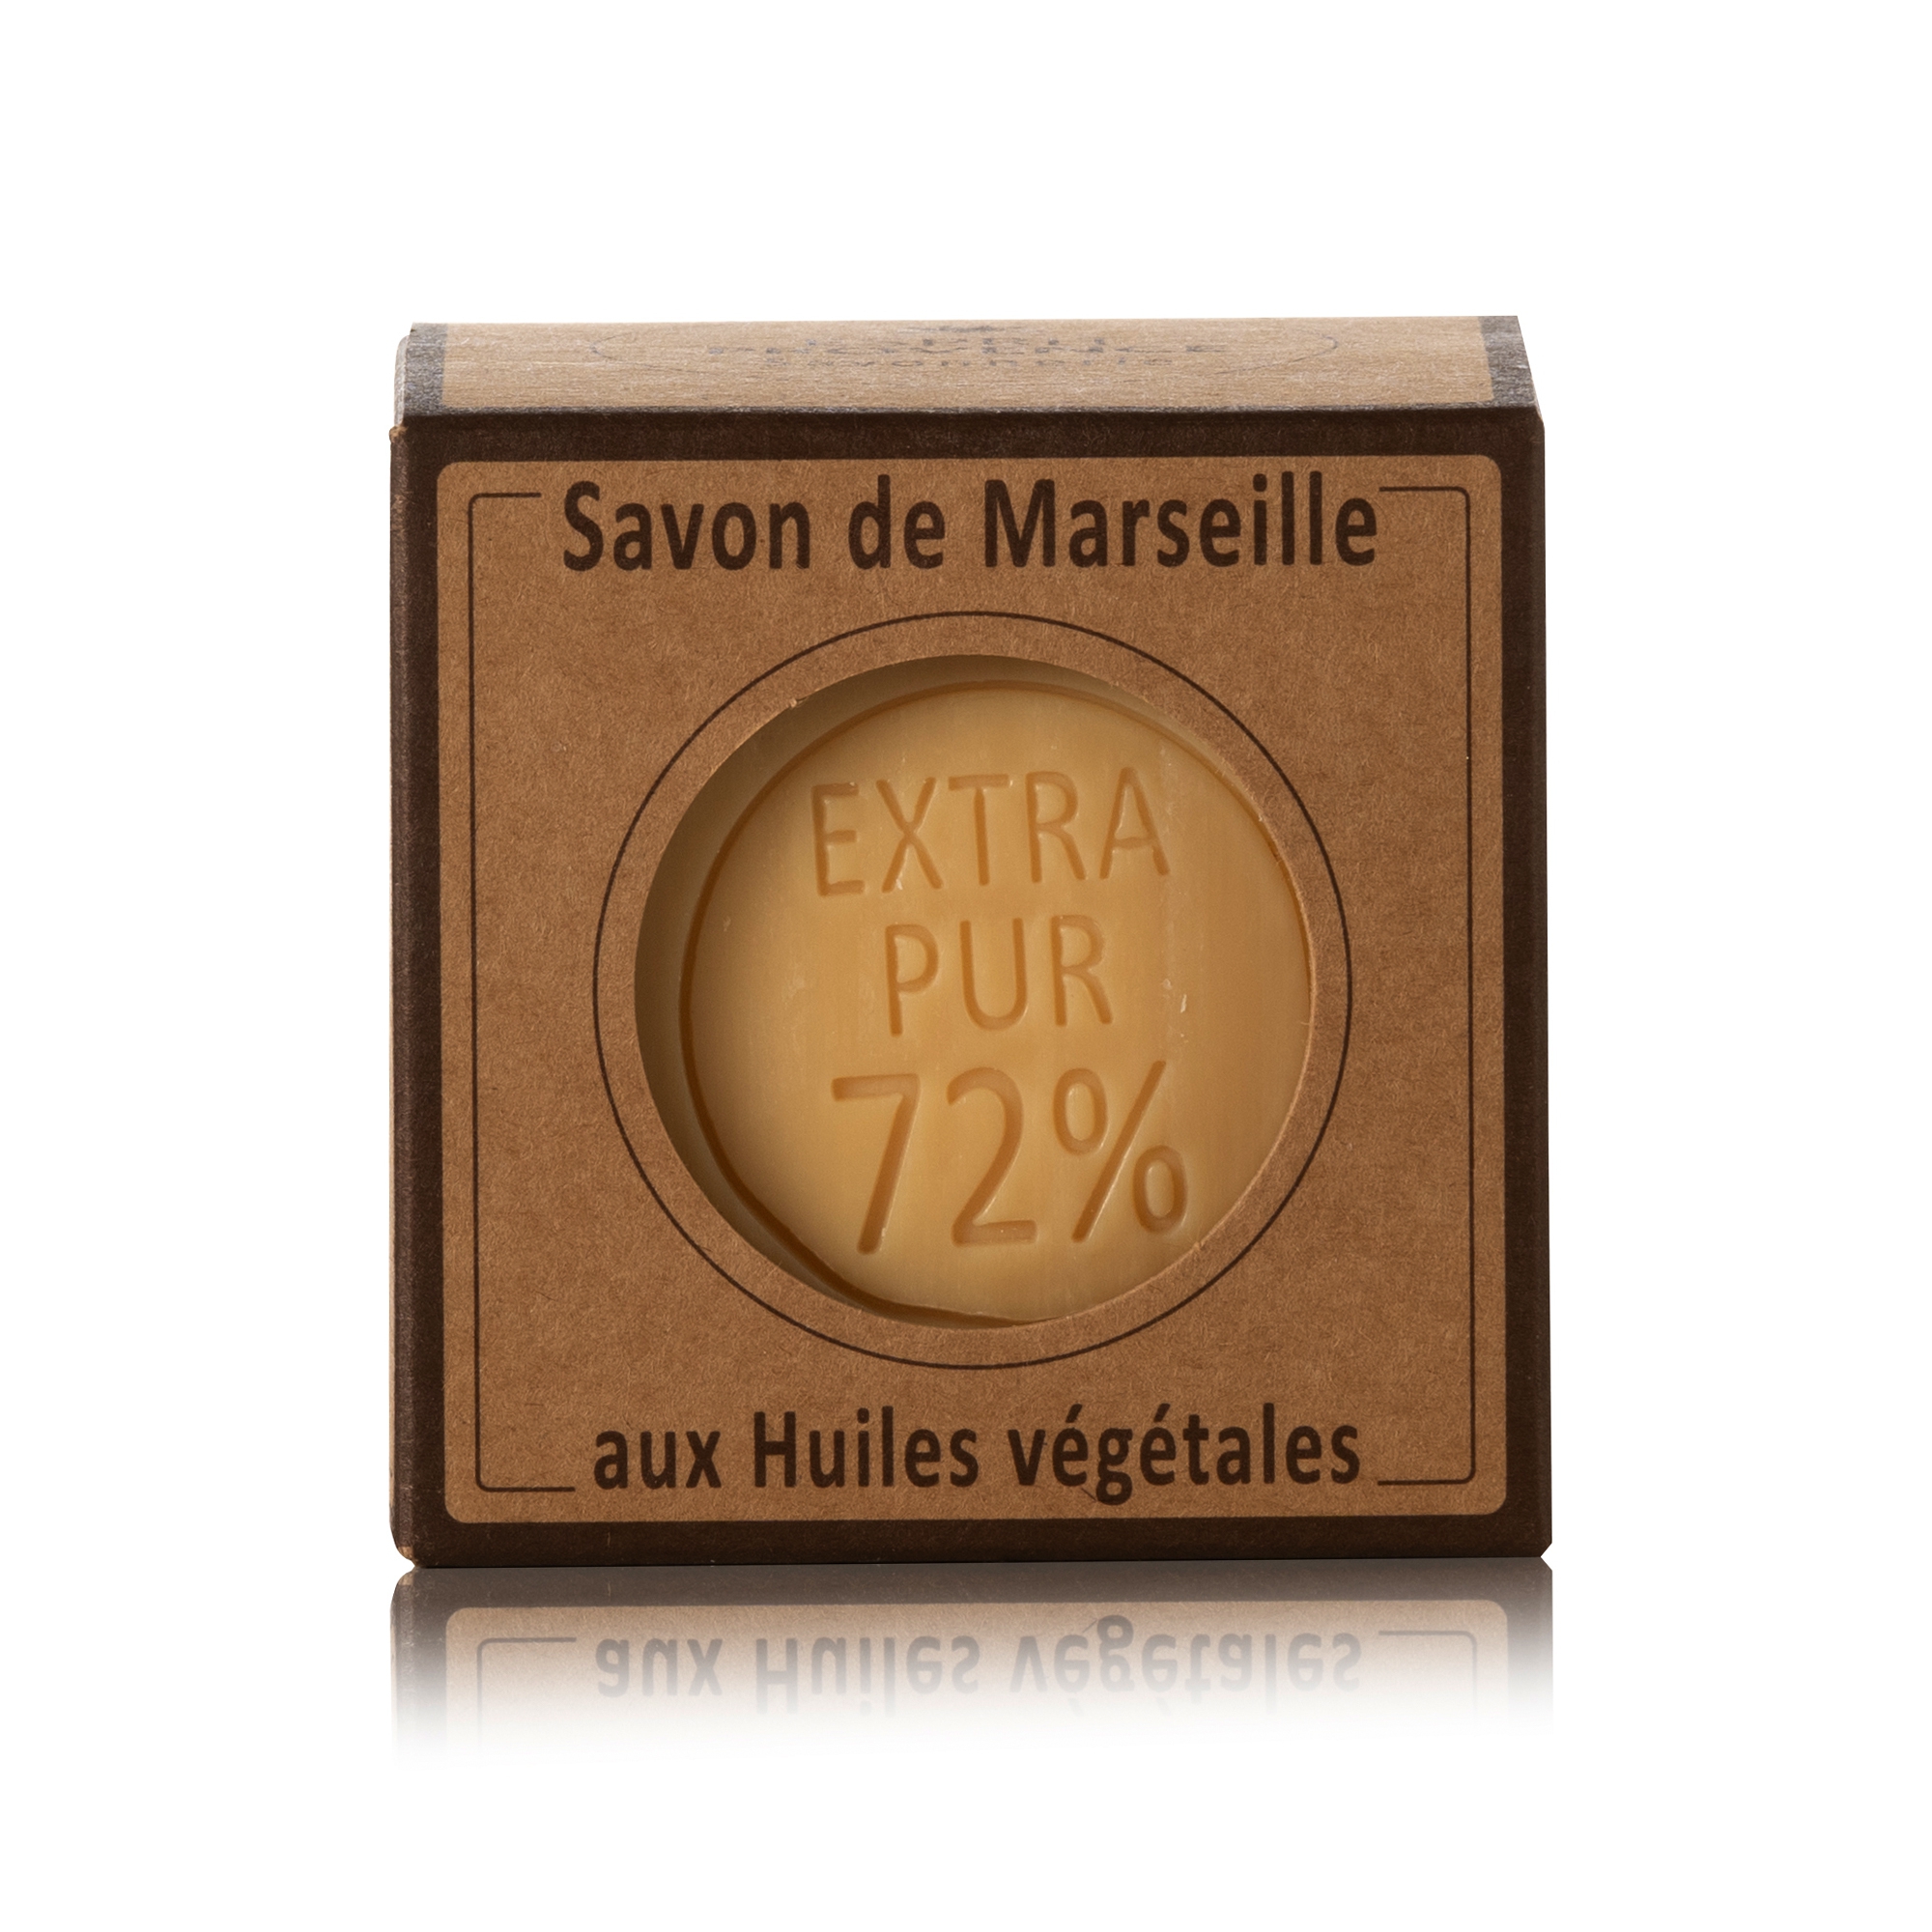 Kernseife 72% 300g Würfel Savon de Marseille (VO)